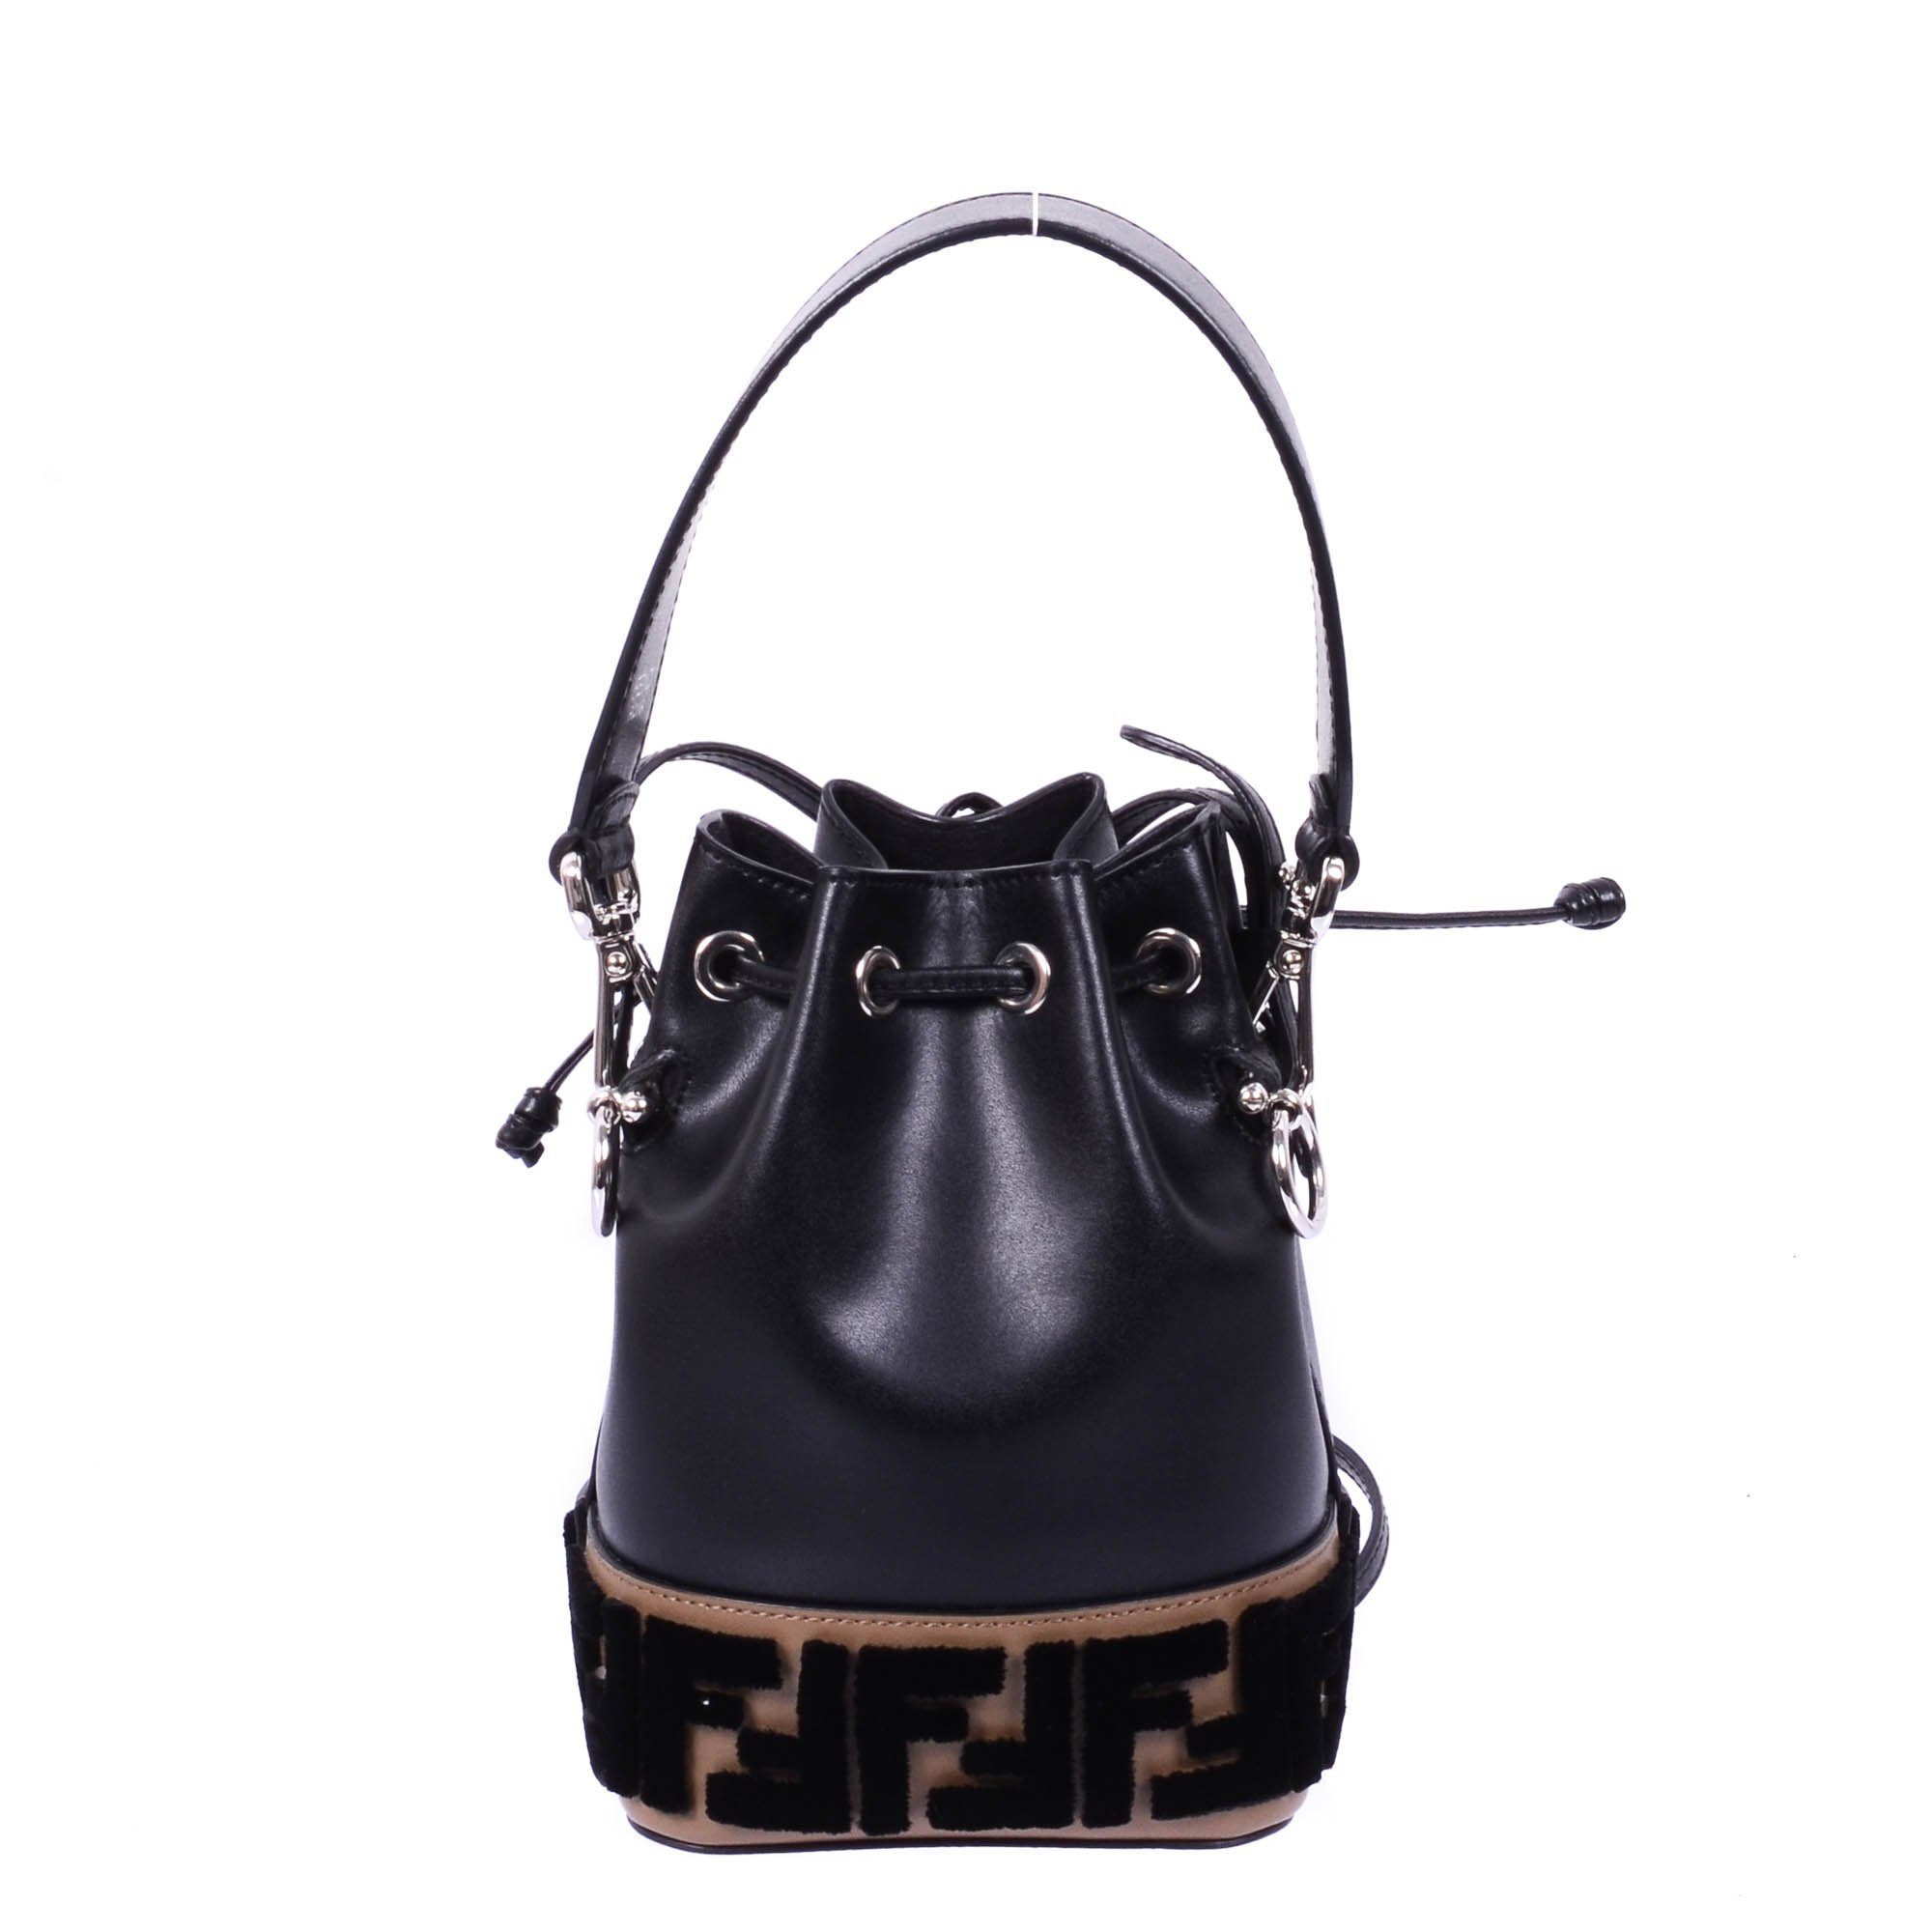 Fendi Black Leather Mini Bucket Bag